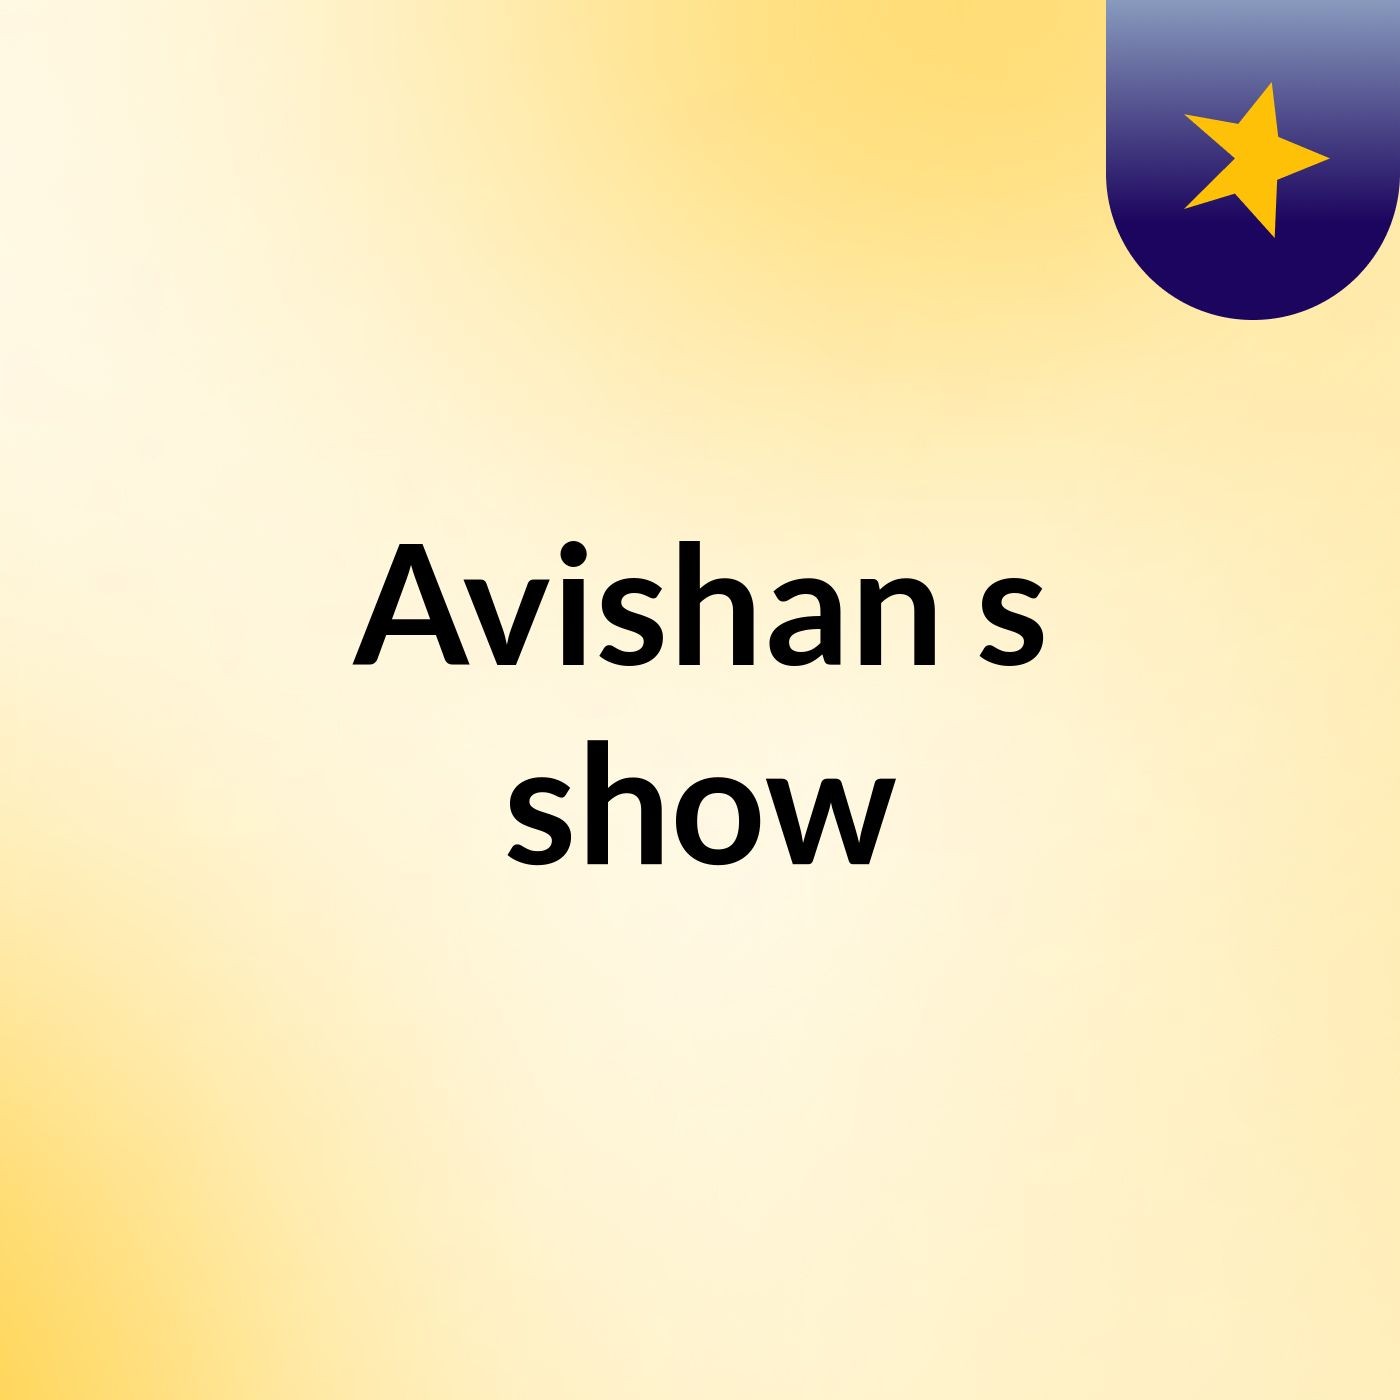 Avishan's show